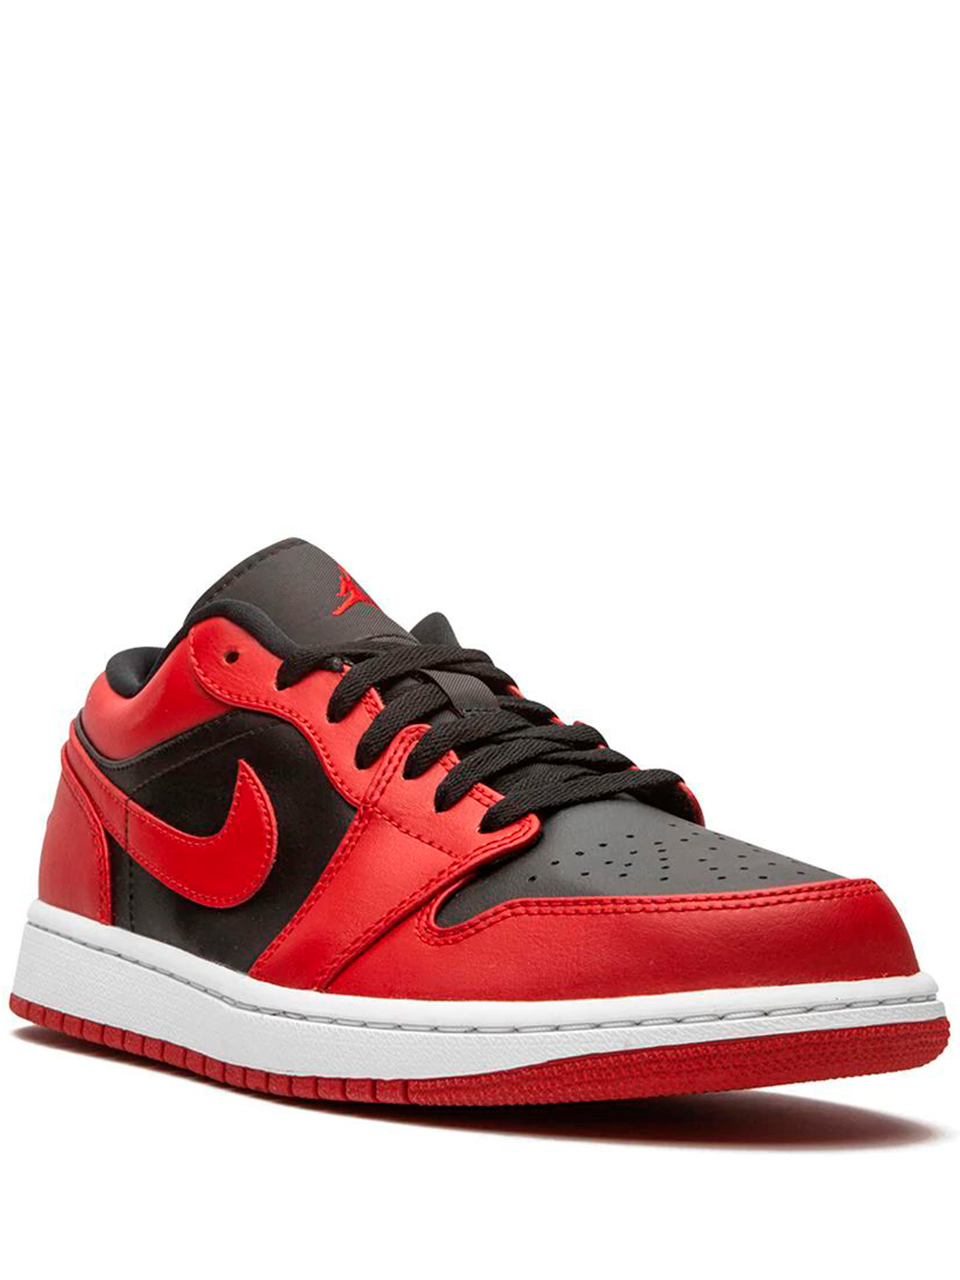 Imagem de: Tênis Nike Air Jordan 1 Low Vermelho e Preto